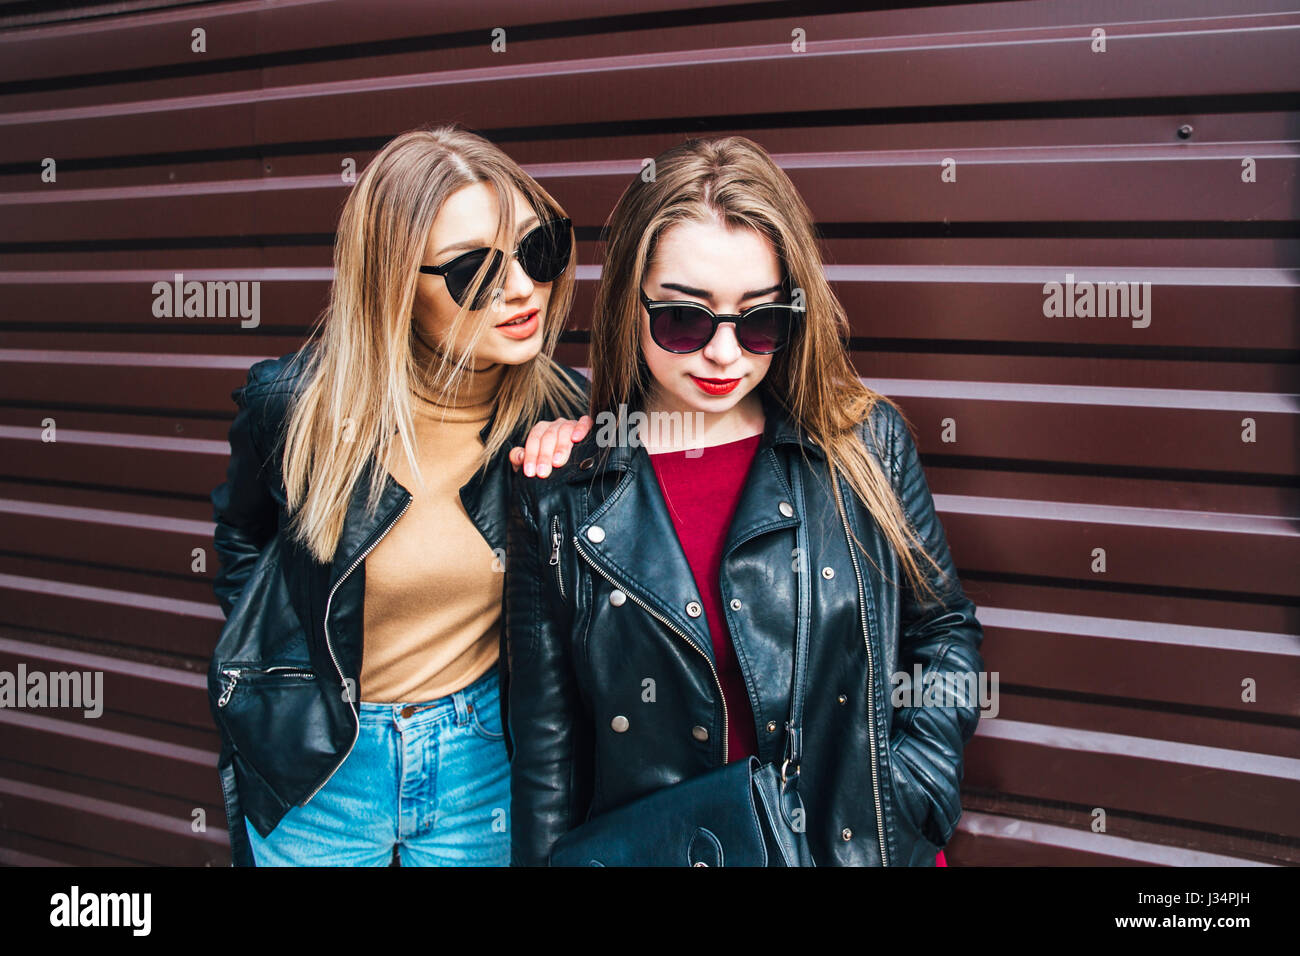 Conversazione tra due donne nella città.Outdoor Lifestyle ritratto di due migliori amici hipster ragazze indossano Elegante giacca di pelle e occhiali da sole, going crazy e avente un grande tempo insieme Foto Stock